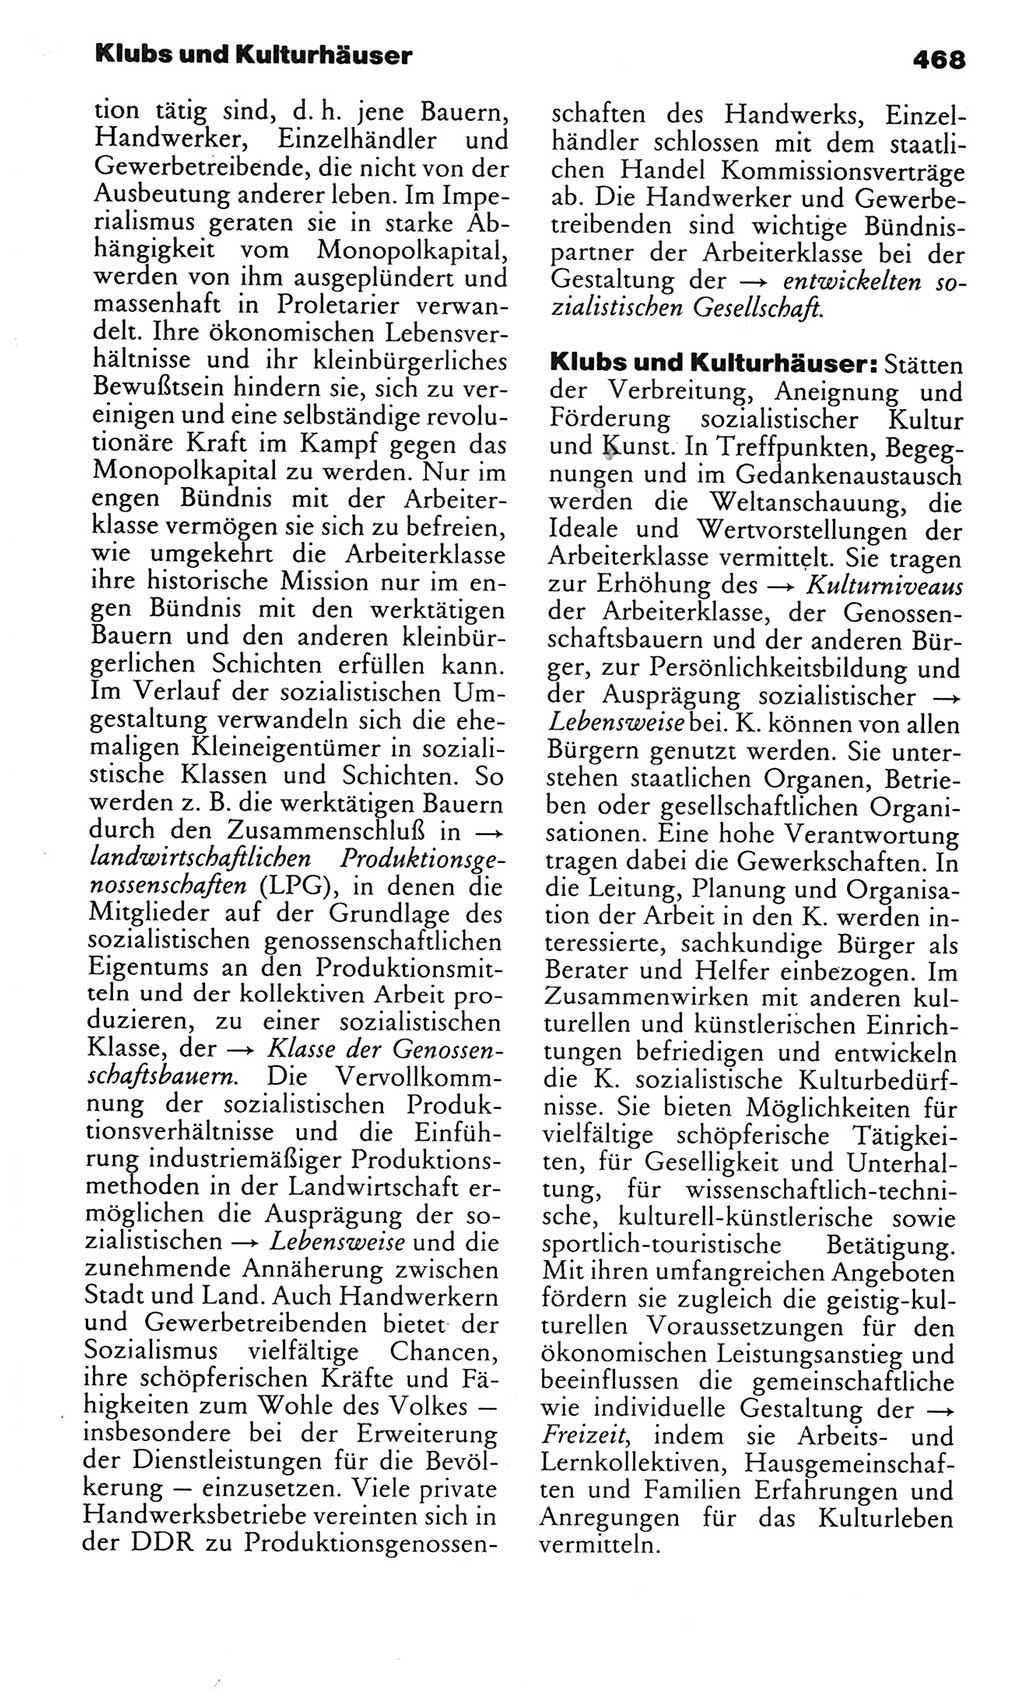 Kleines politisches Wörterbuch [Deutsche Demokratische Republik (DDR)] 1983, Seite 468 (Kl. pol. Wb. DDR 1983, S. 468)